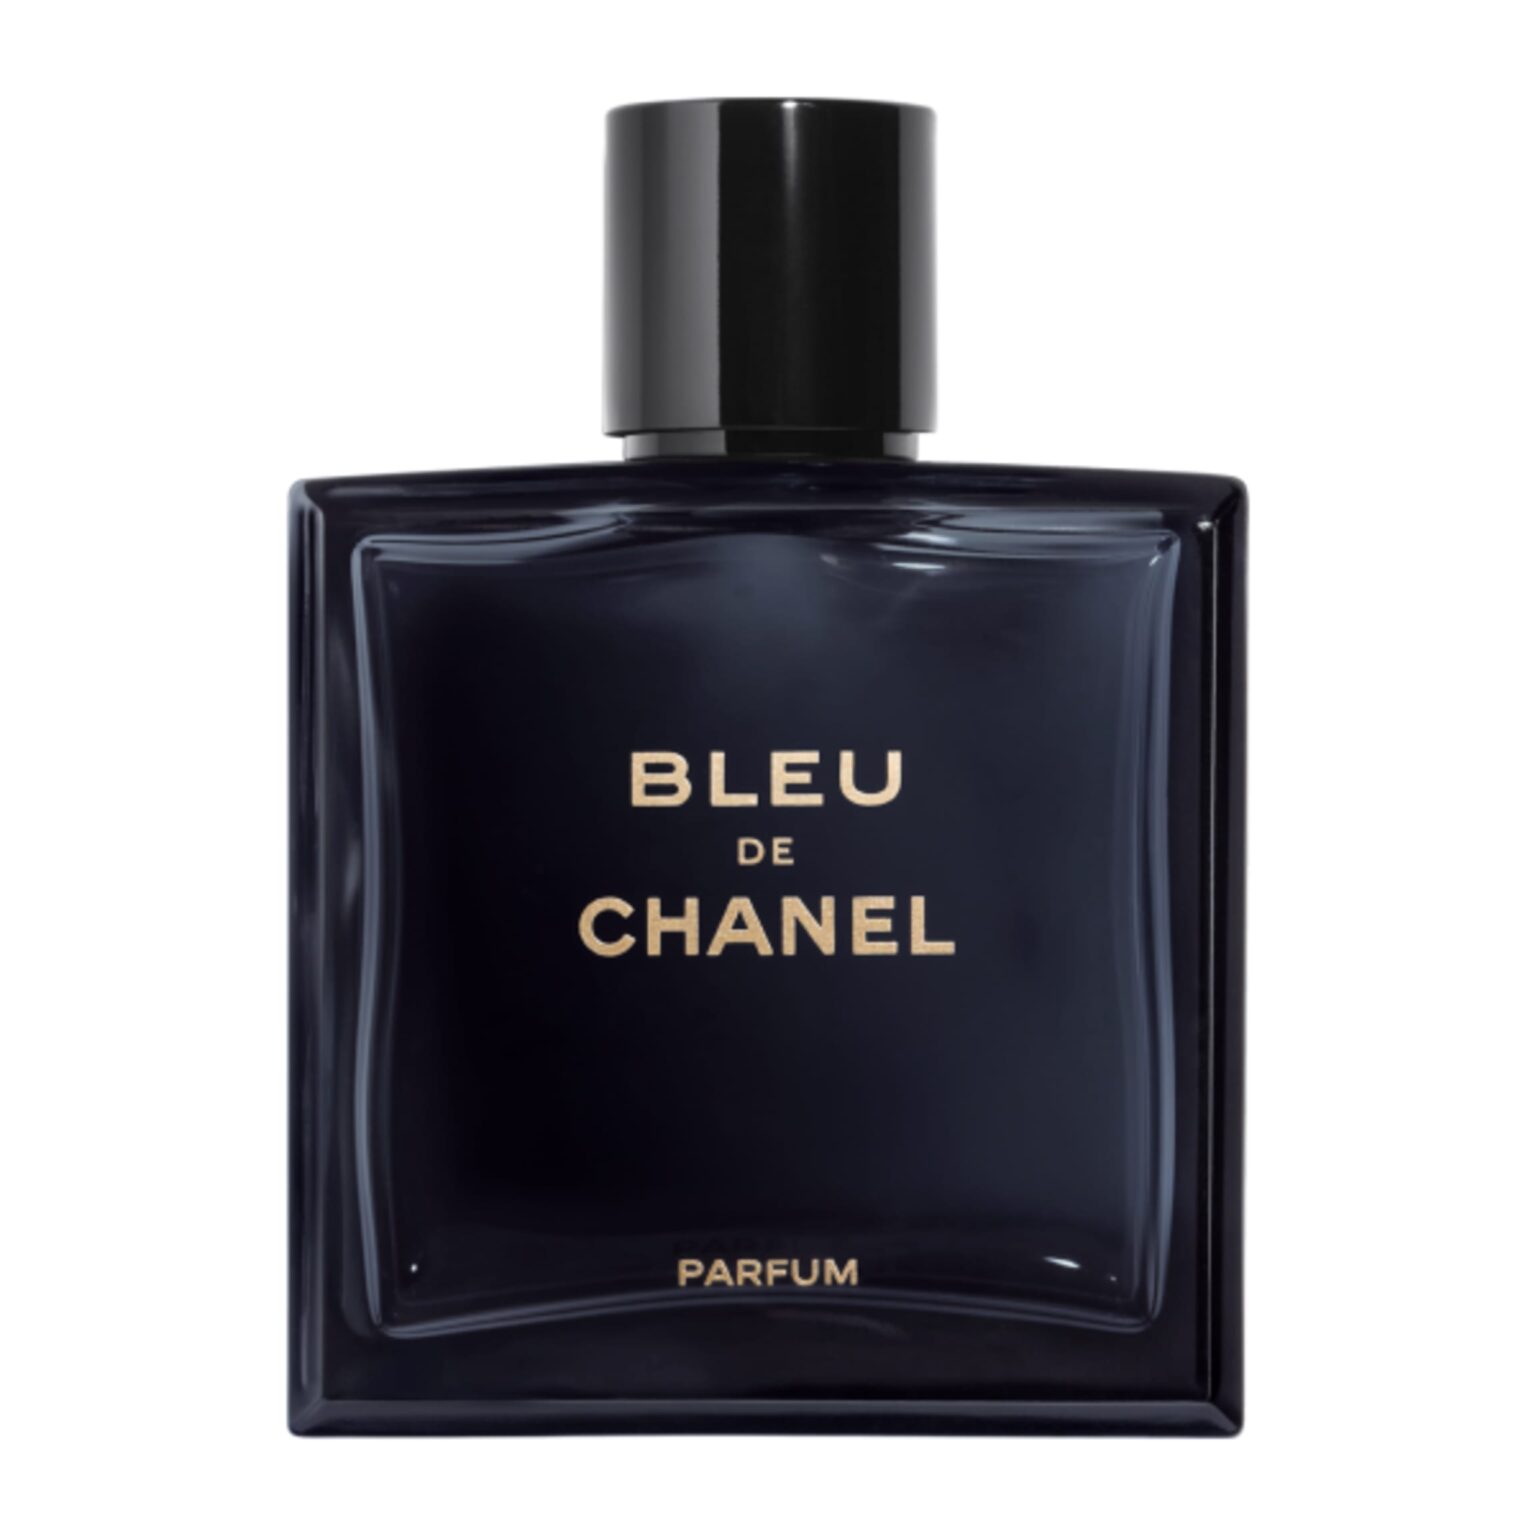 Bleu De Chanel 100ml Eau de Parfum Spray TESTER Your